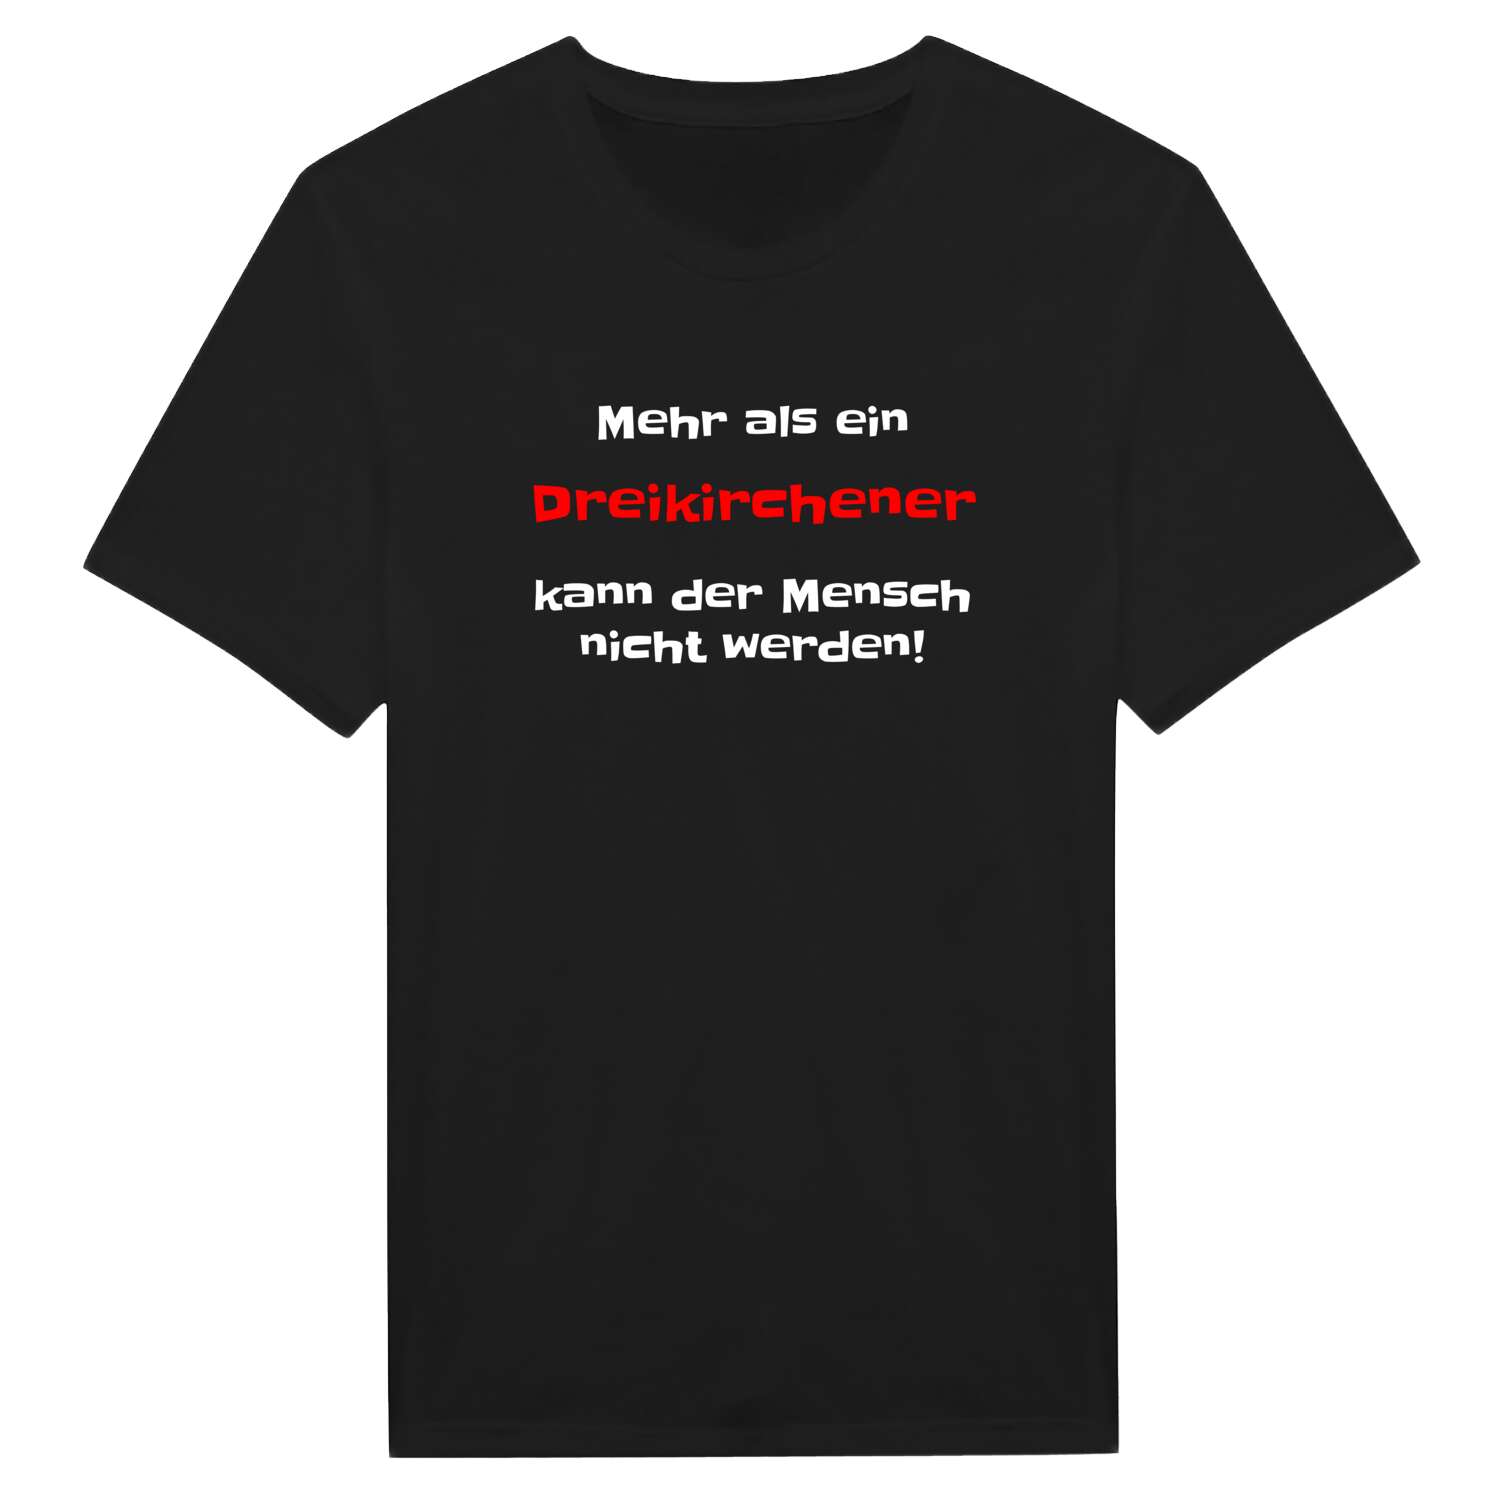 Dreikirchen T-Shirt »Mehr als ein«